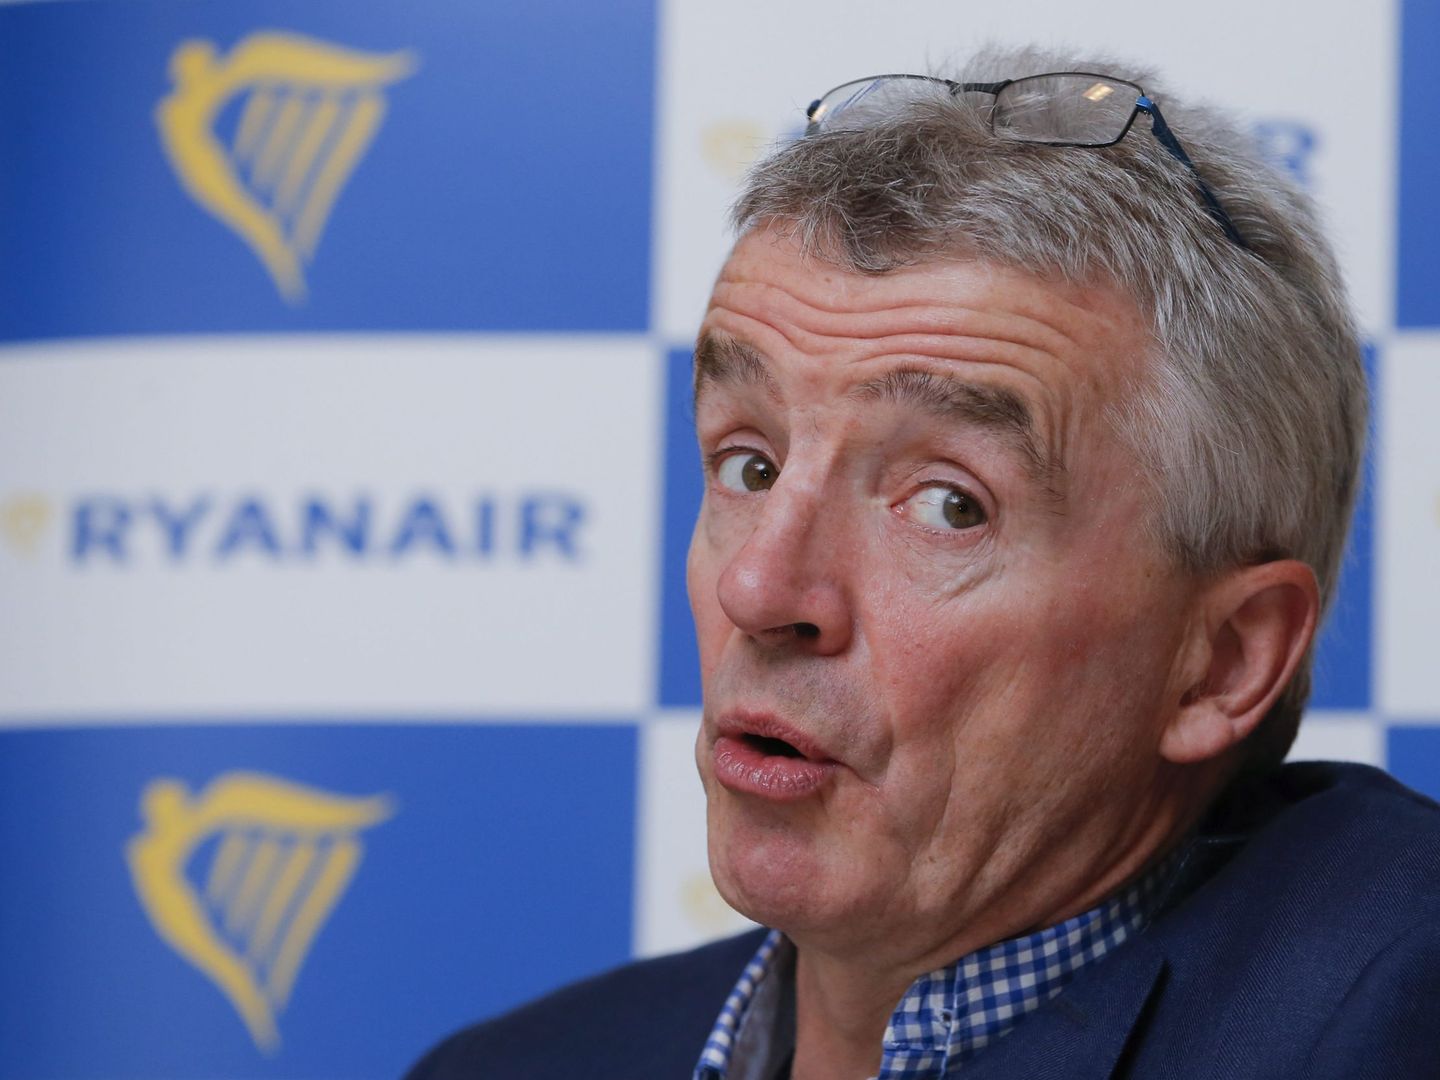 El presidente de Ryanair, Michael O'Leary. La suya ha sido la primera aerolínea en operar en el aeródromo. (EFE)